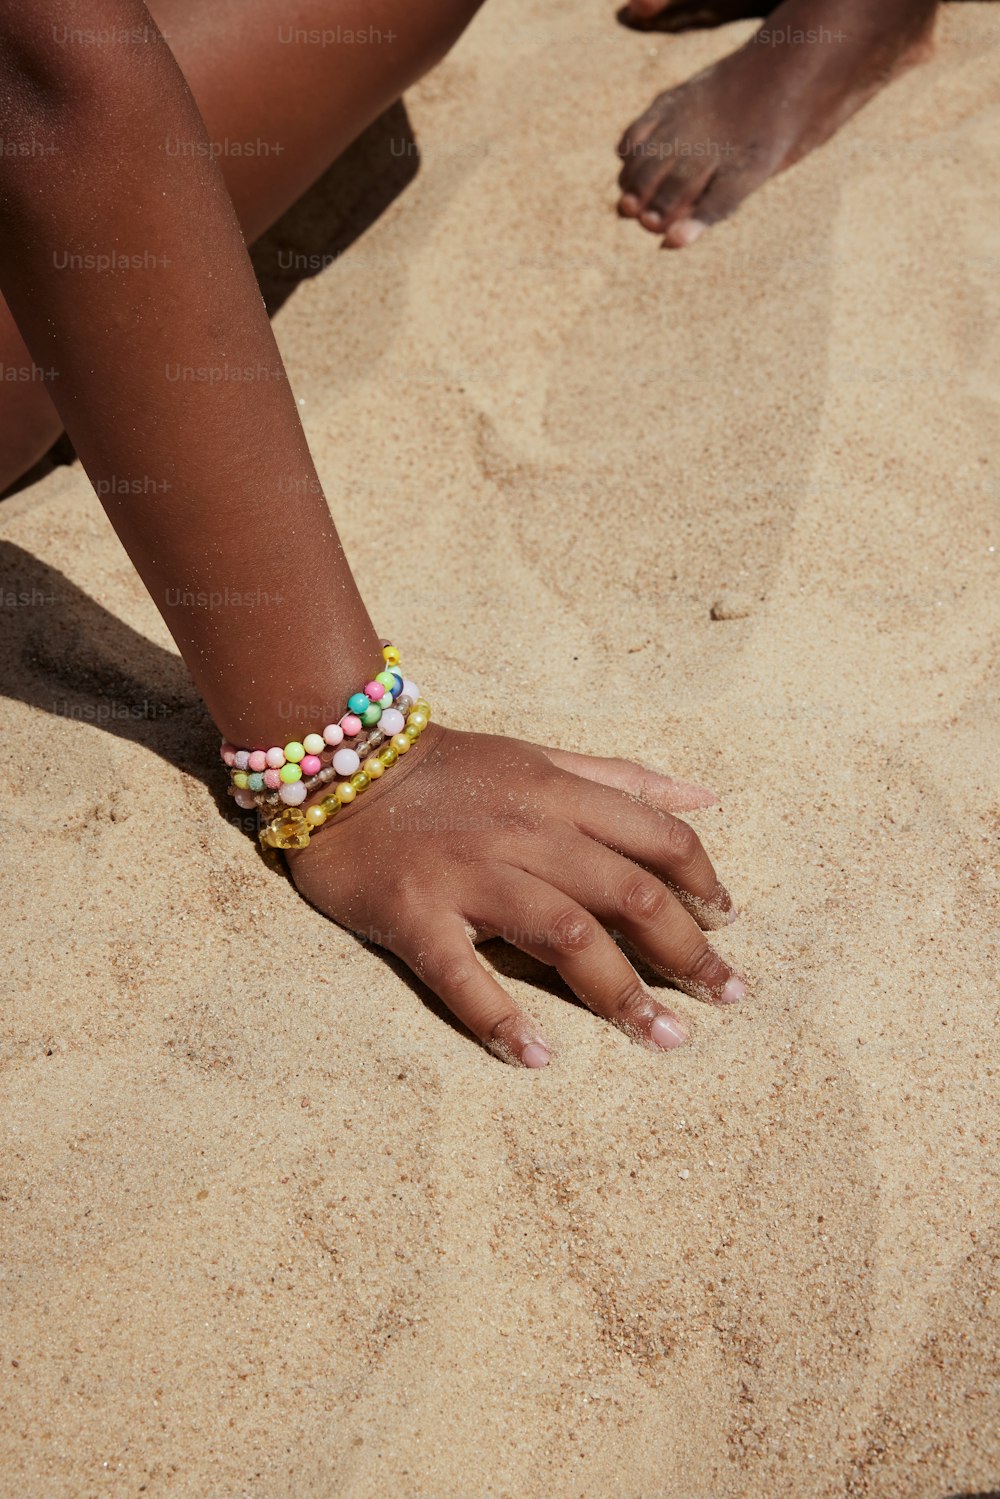 Un primo piano della mano di una persona sulla sabbia